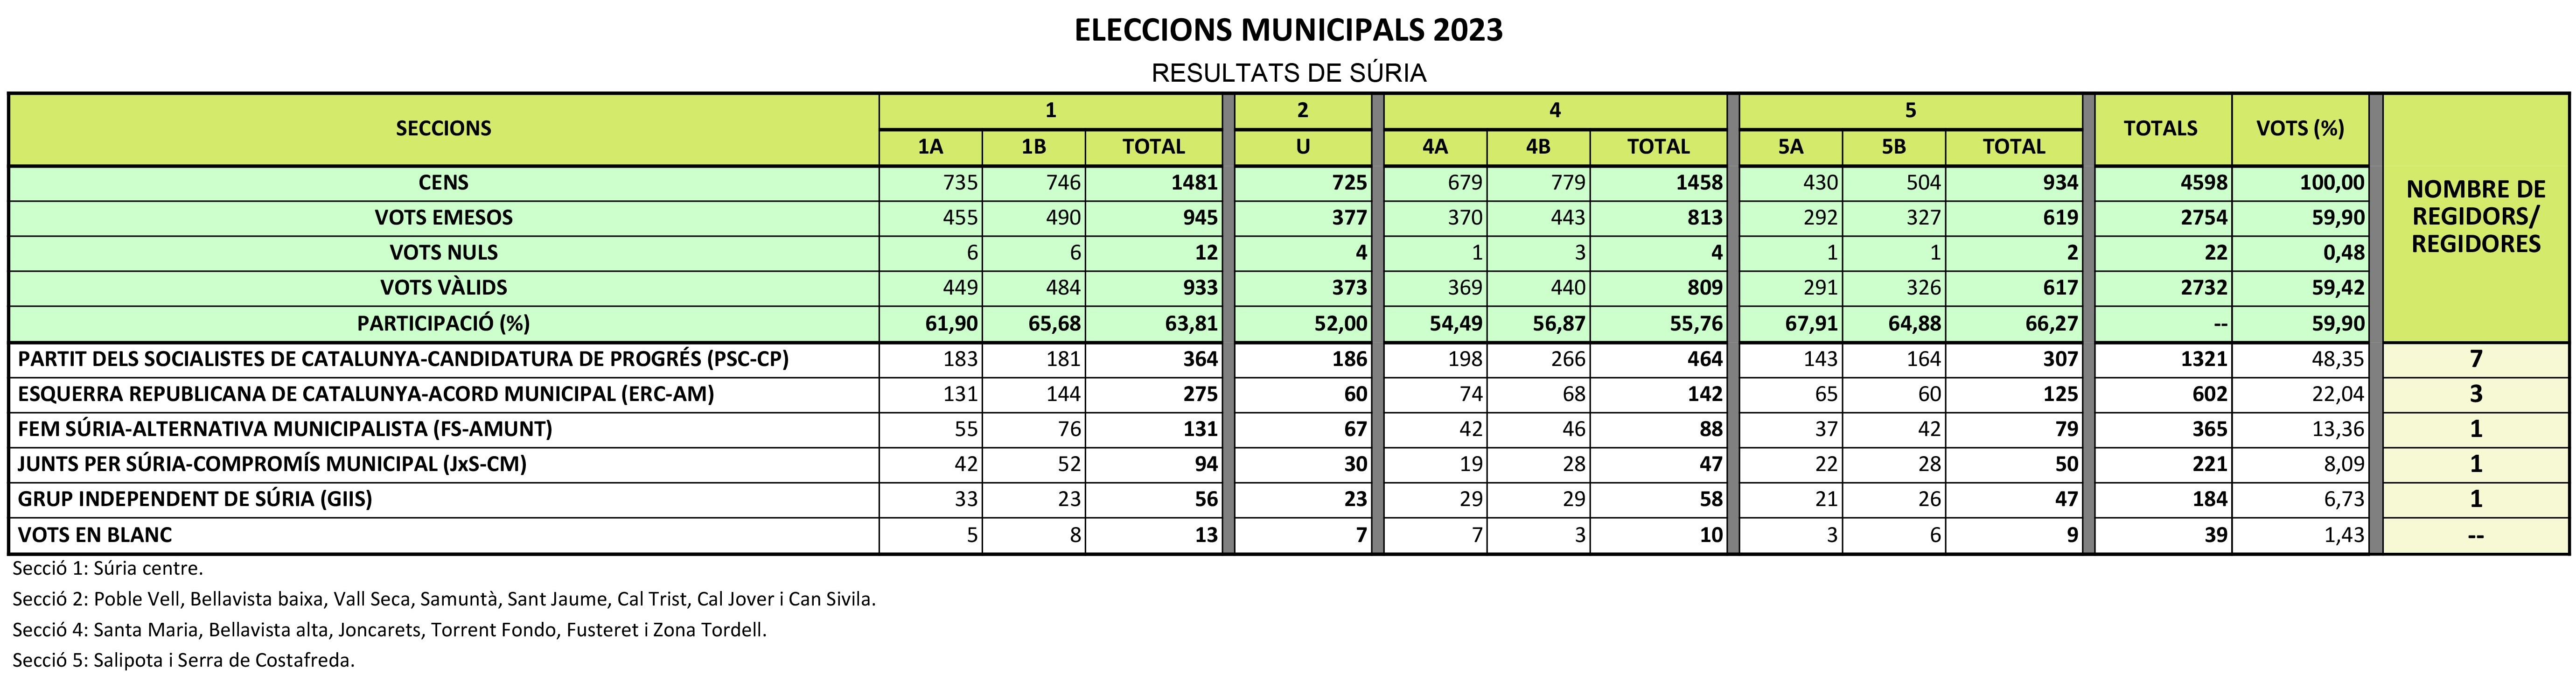 Resultats de les eleccions municipals 2023